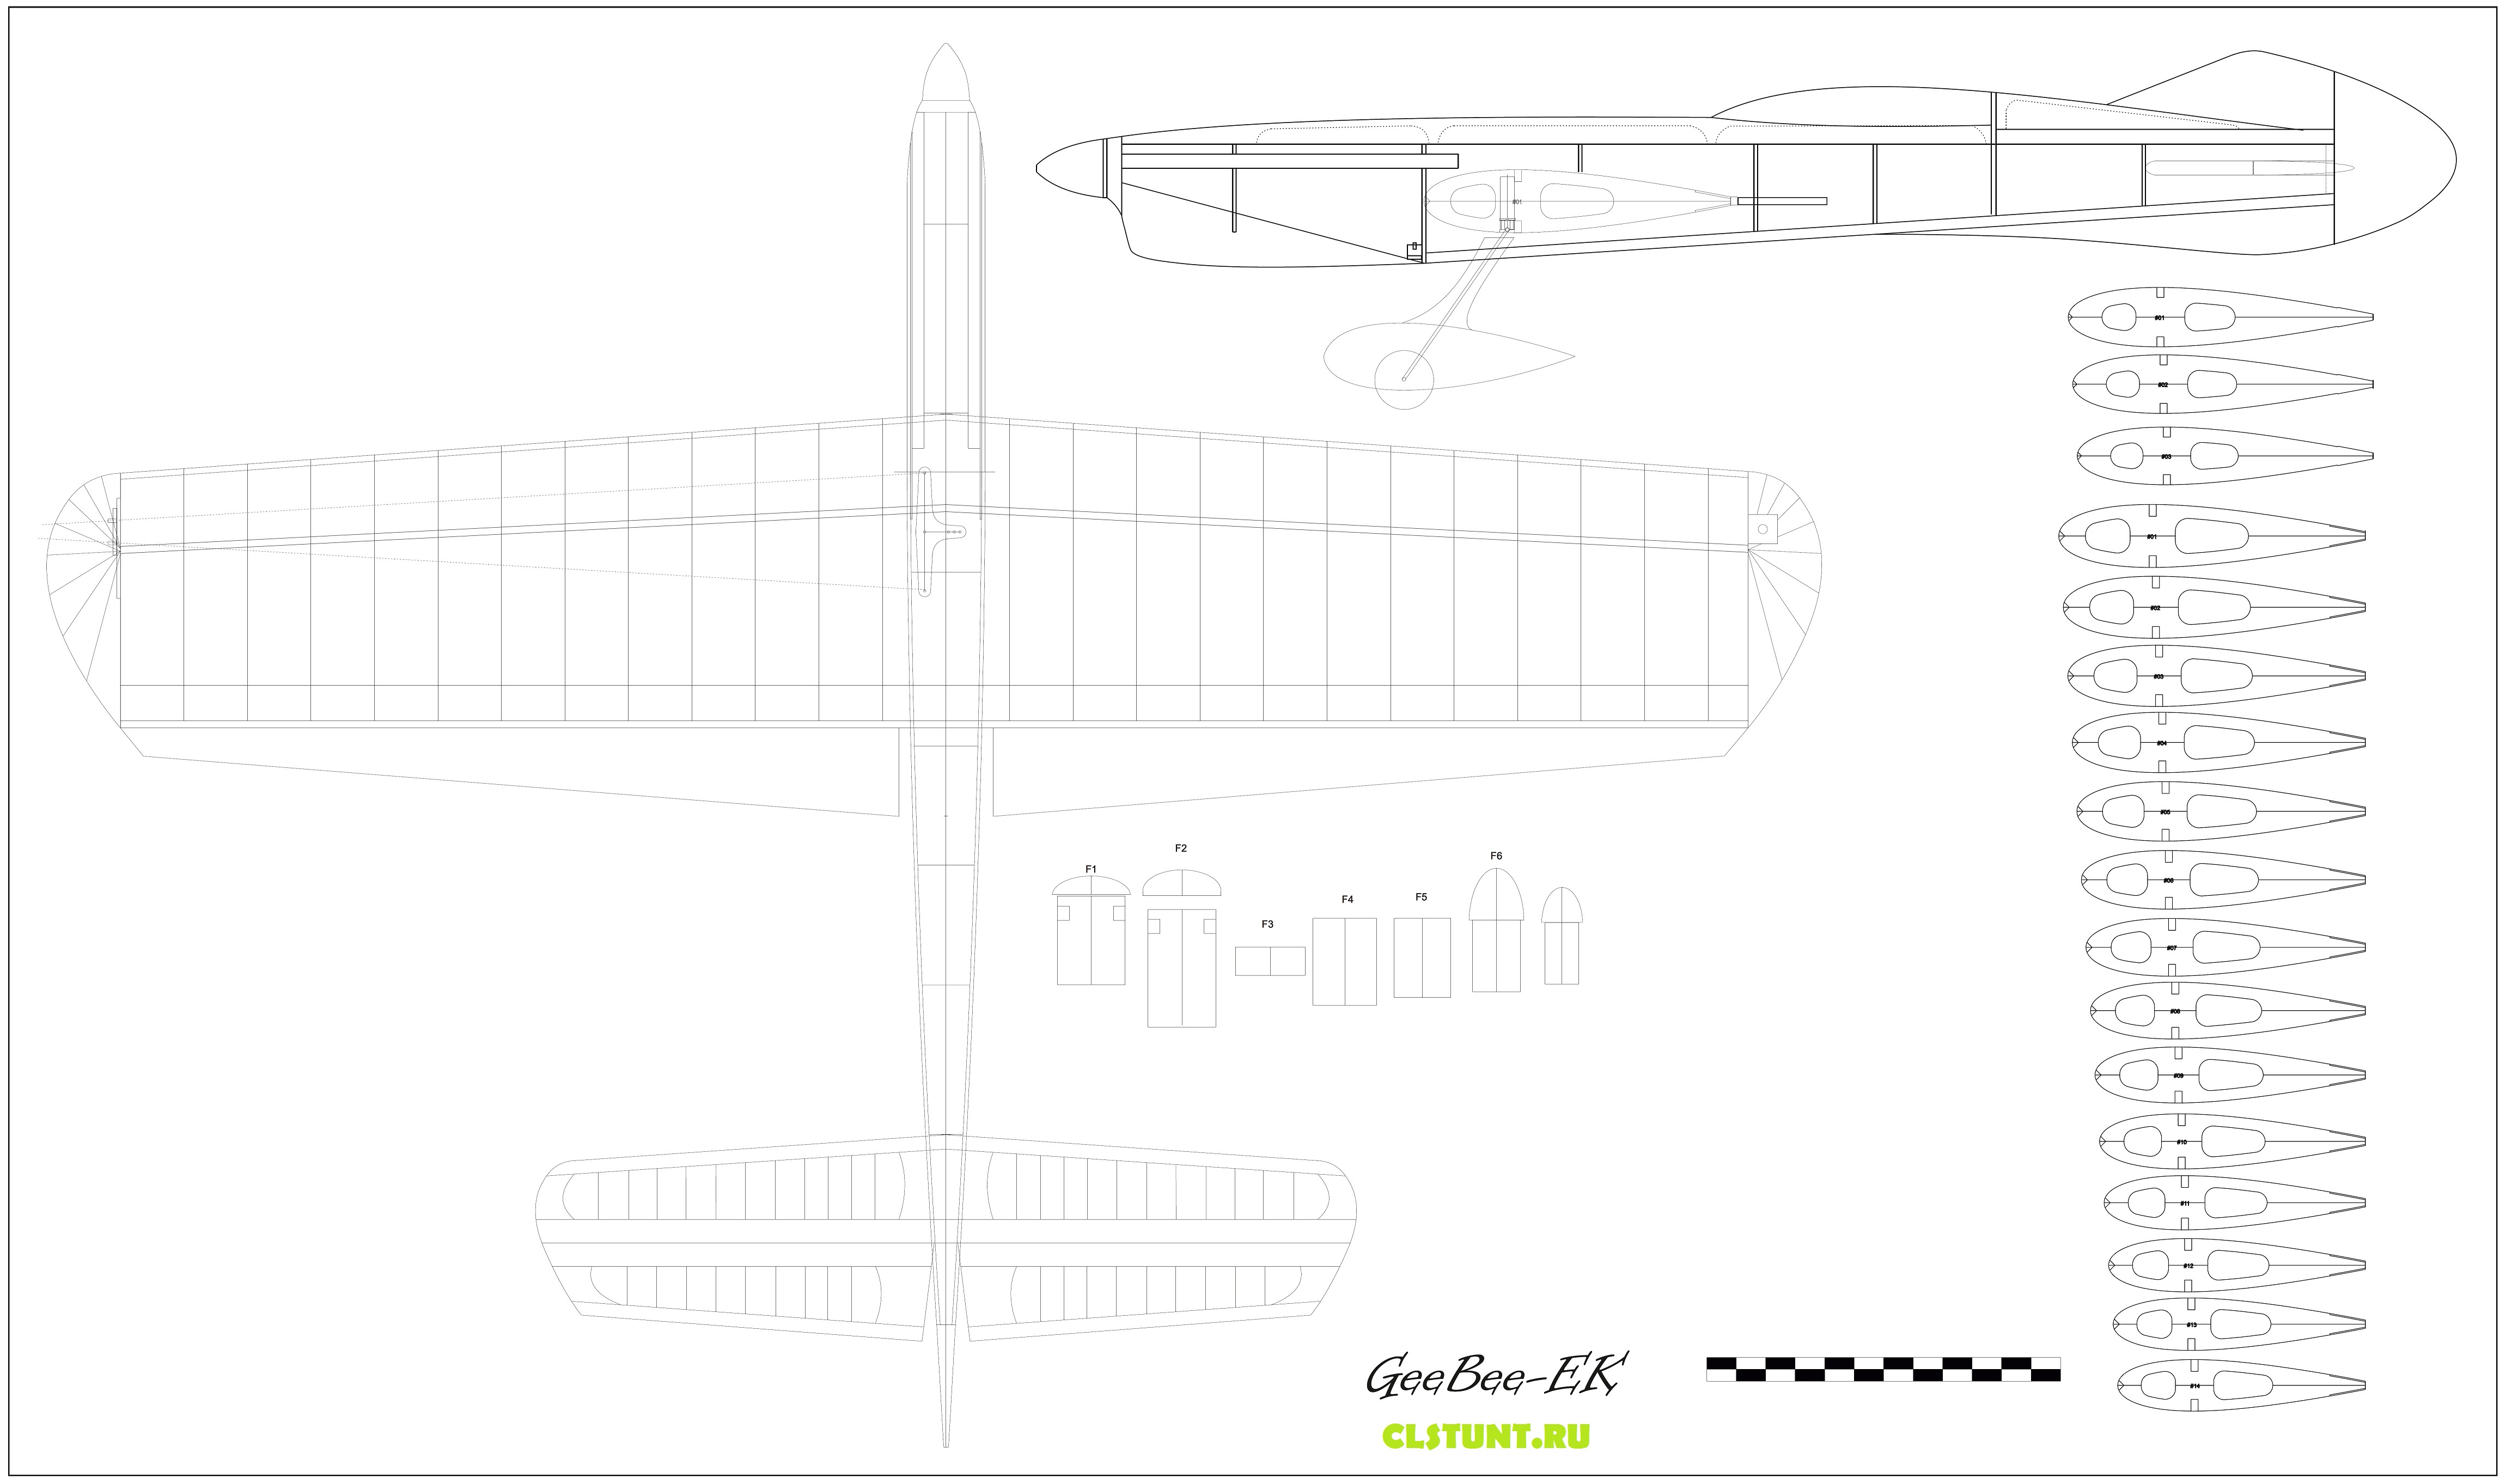 GeeBee_EK чертеж кордовой пилотажной модели